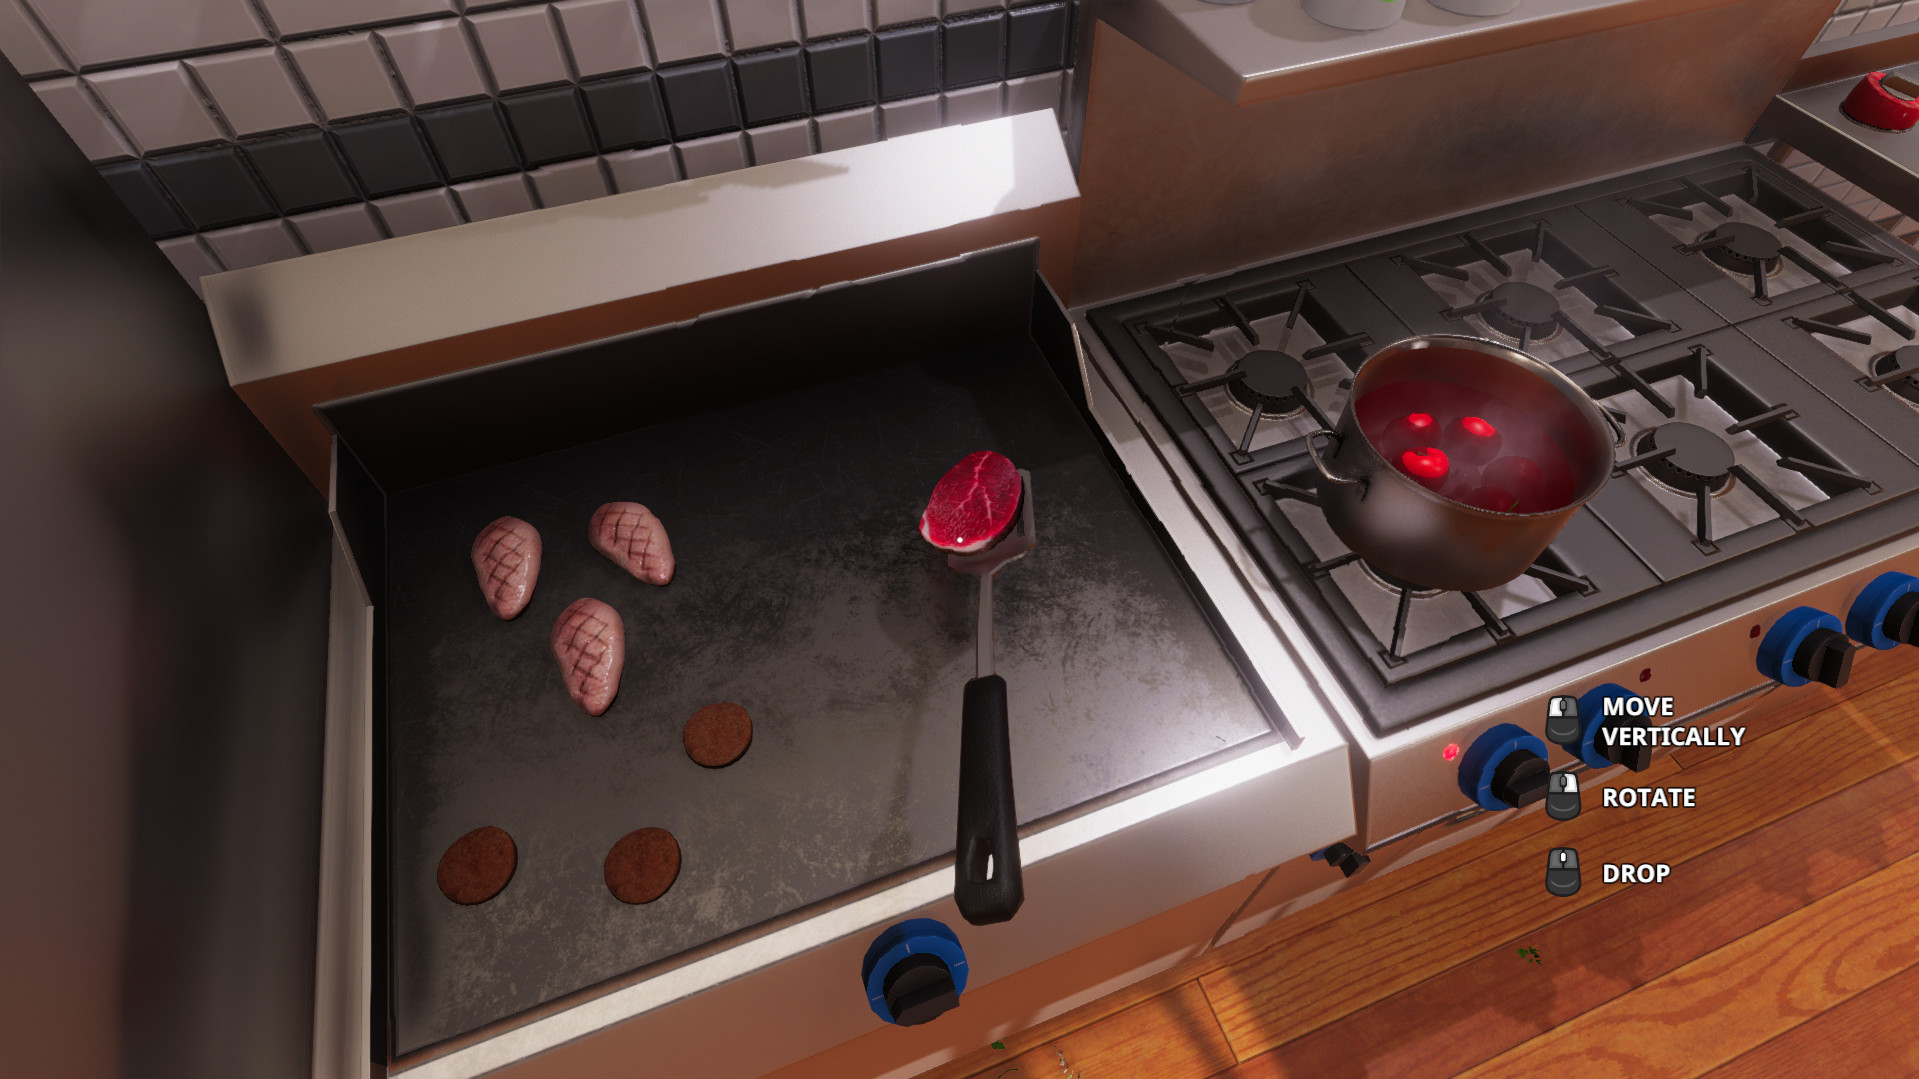 Link Tải Game Cooking Simulator Miễn Phí Thành Công